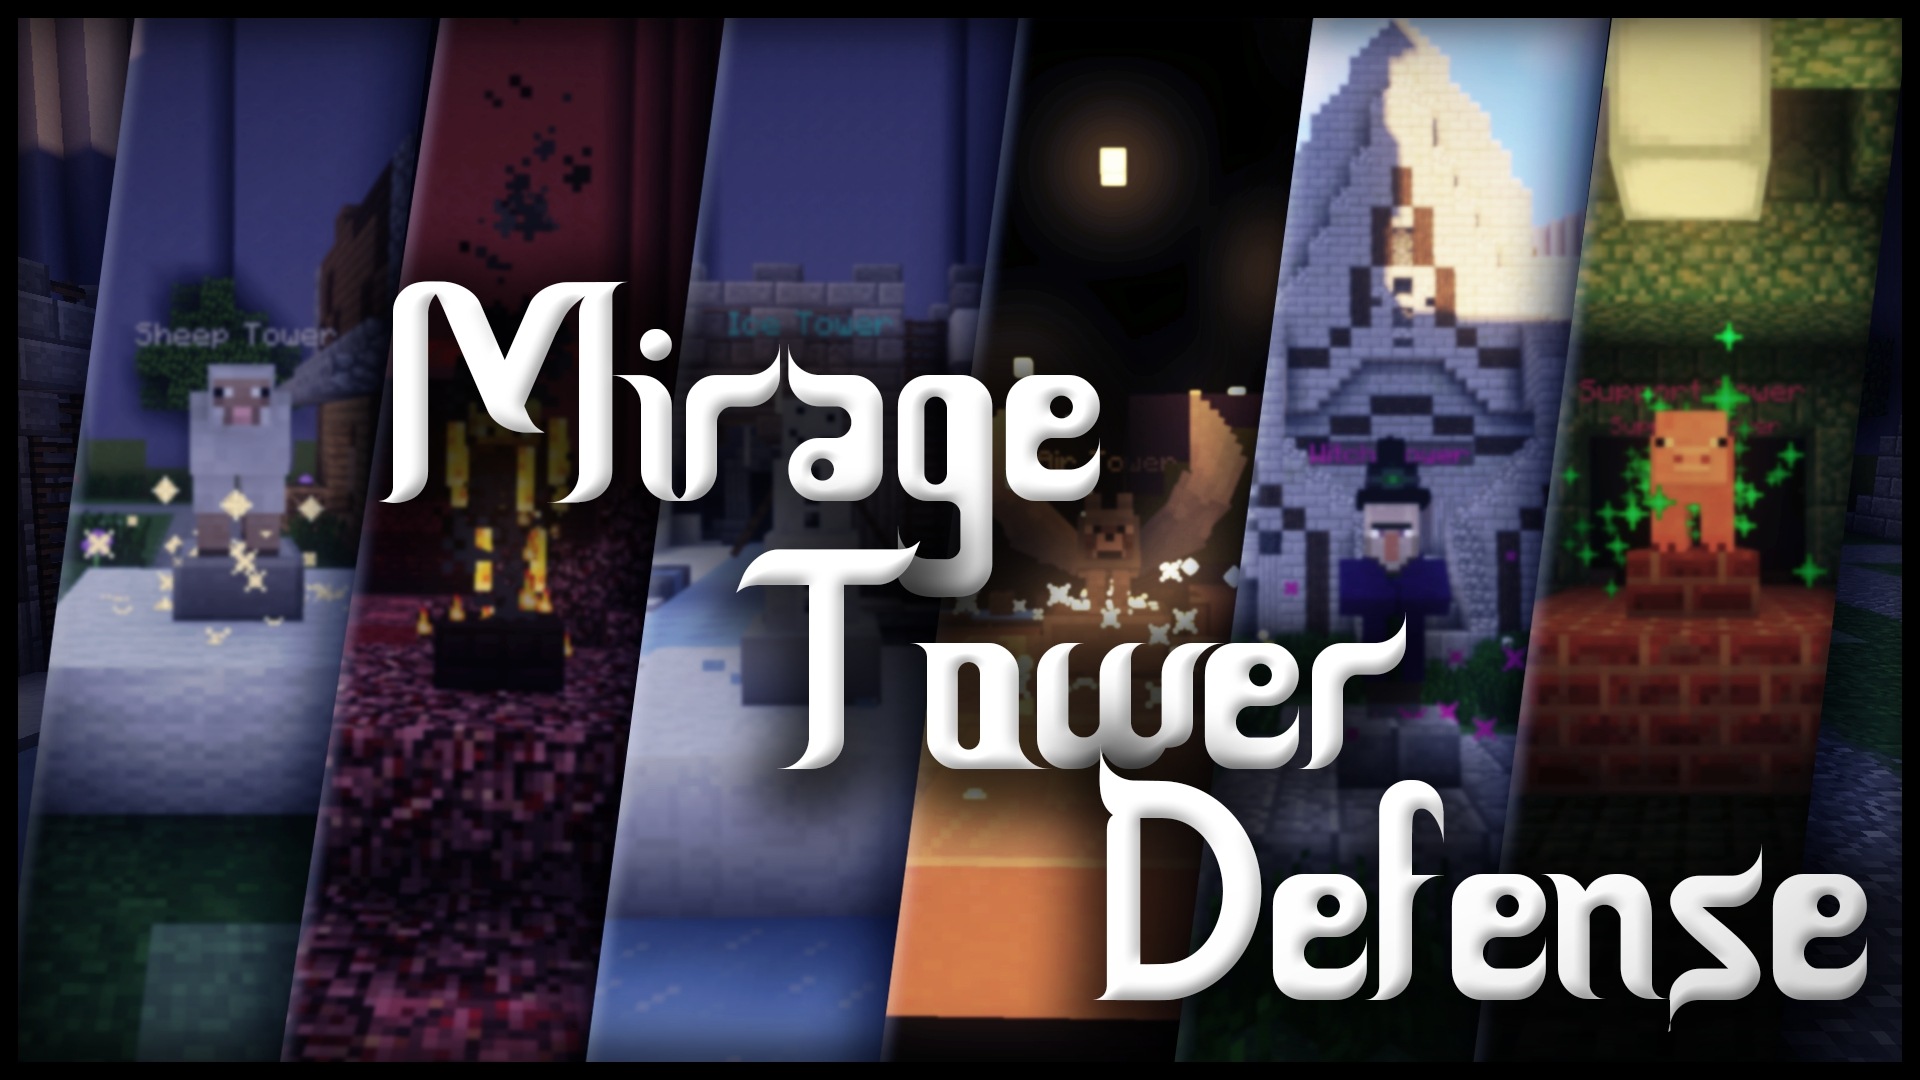 Minecraft Tower Defense